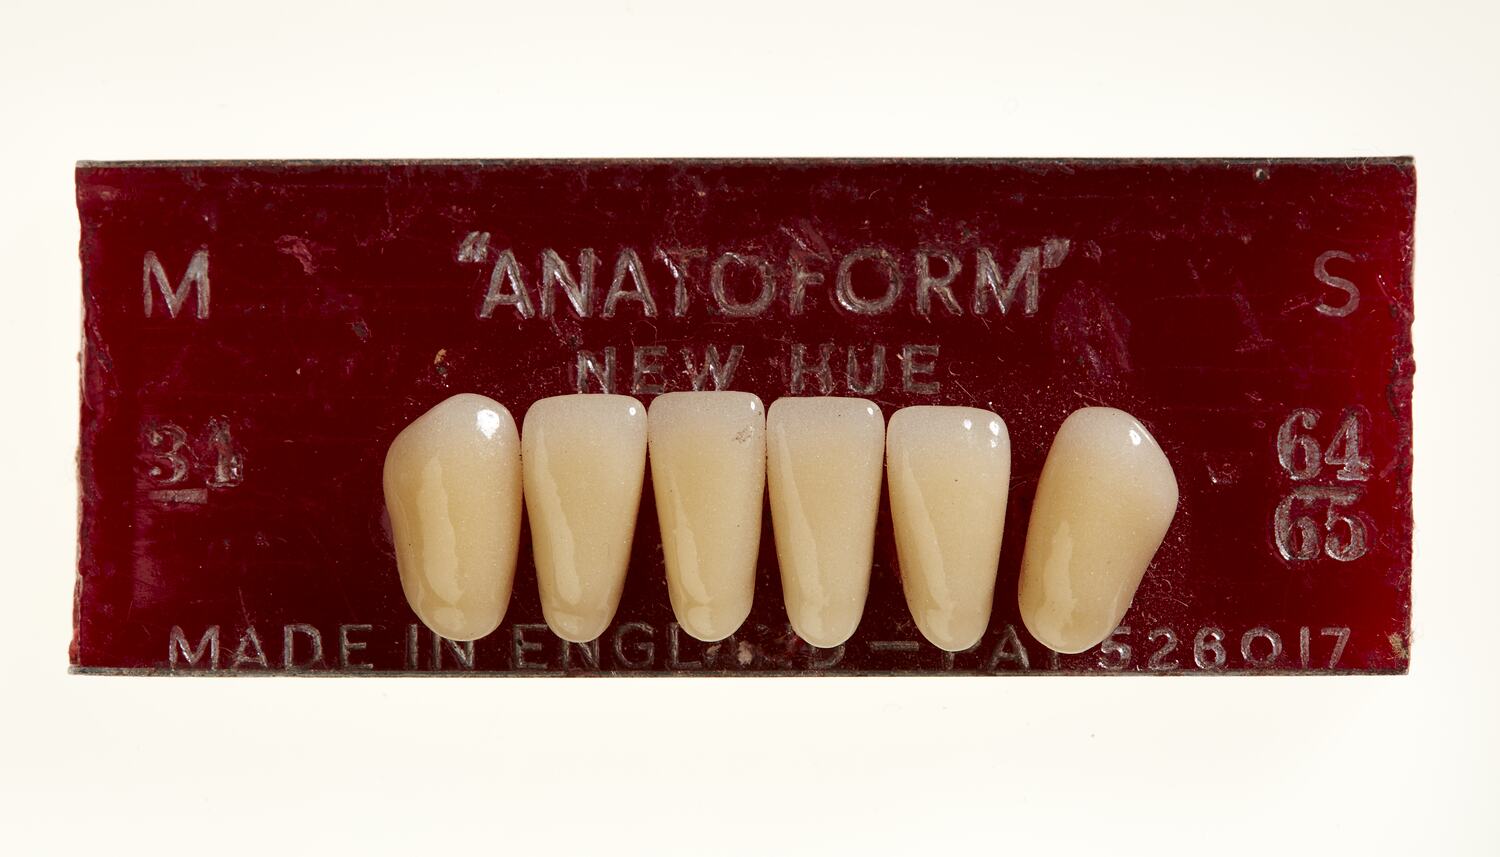 Artificial Teeth - Incisors, Anatoform, circa 1925